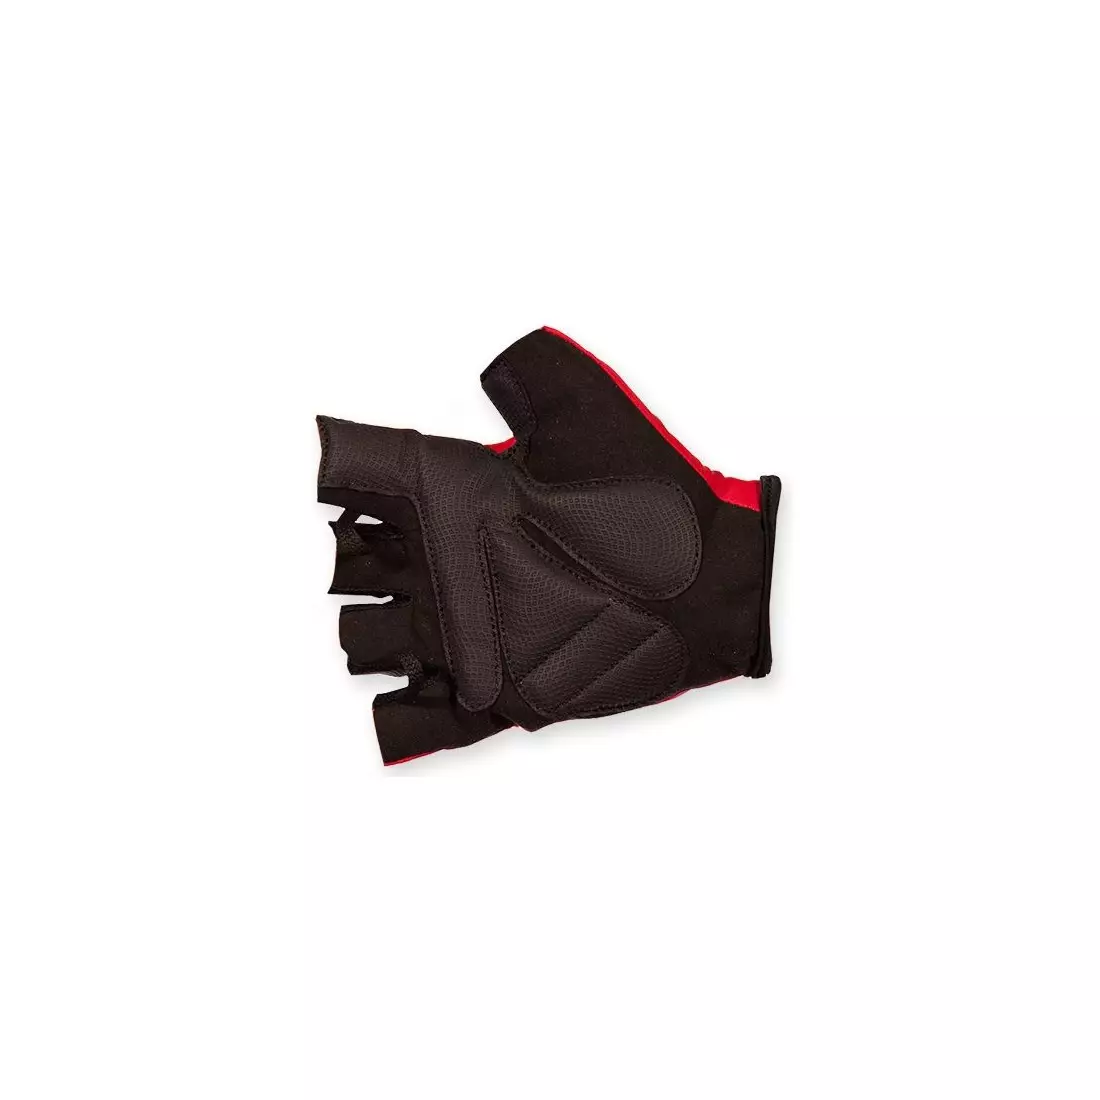 ROGELLI BELCHER - červené cyklistické rukavice